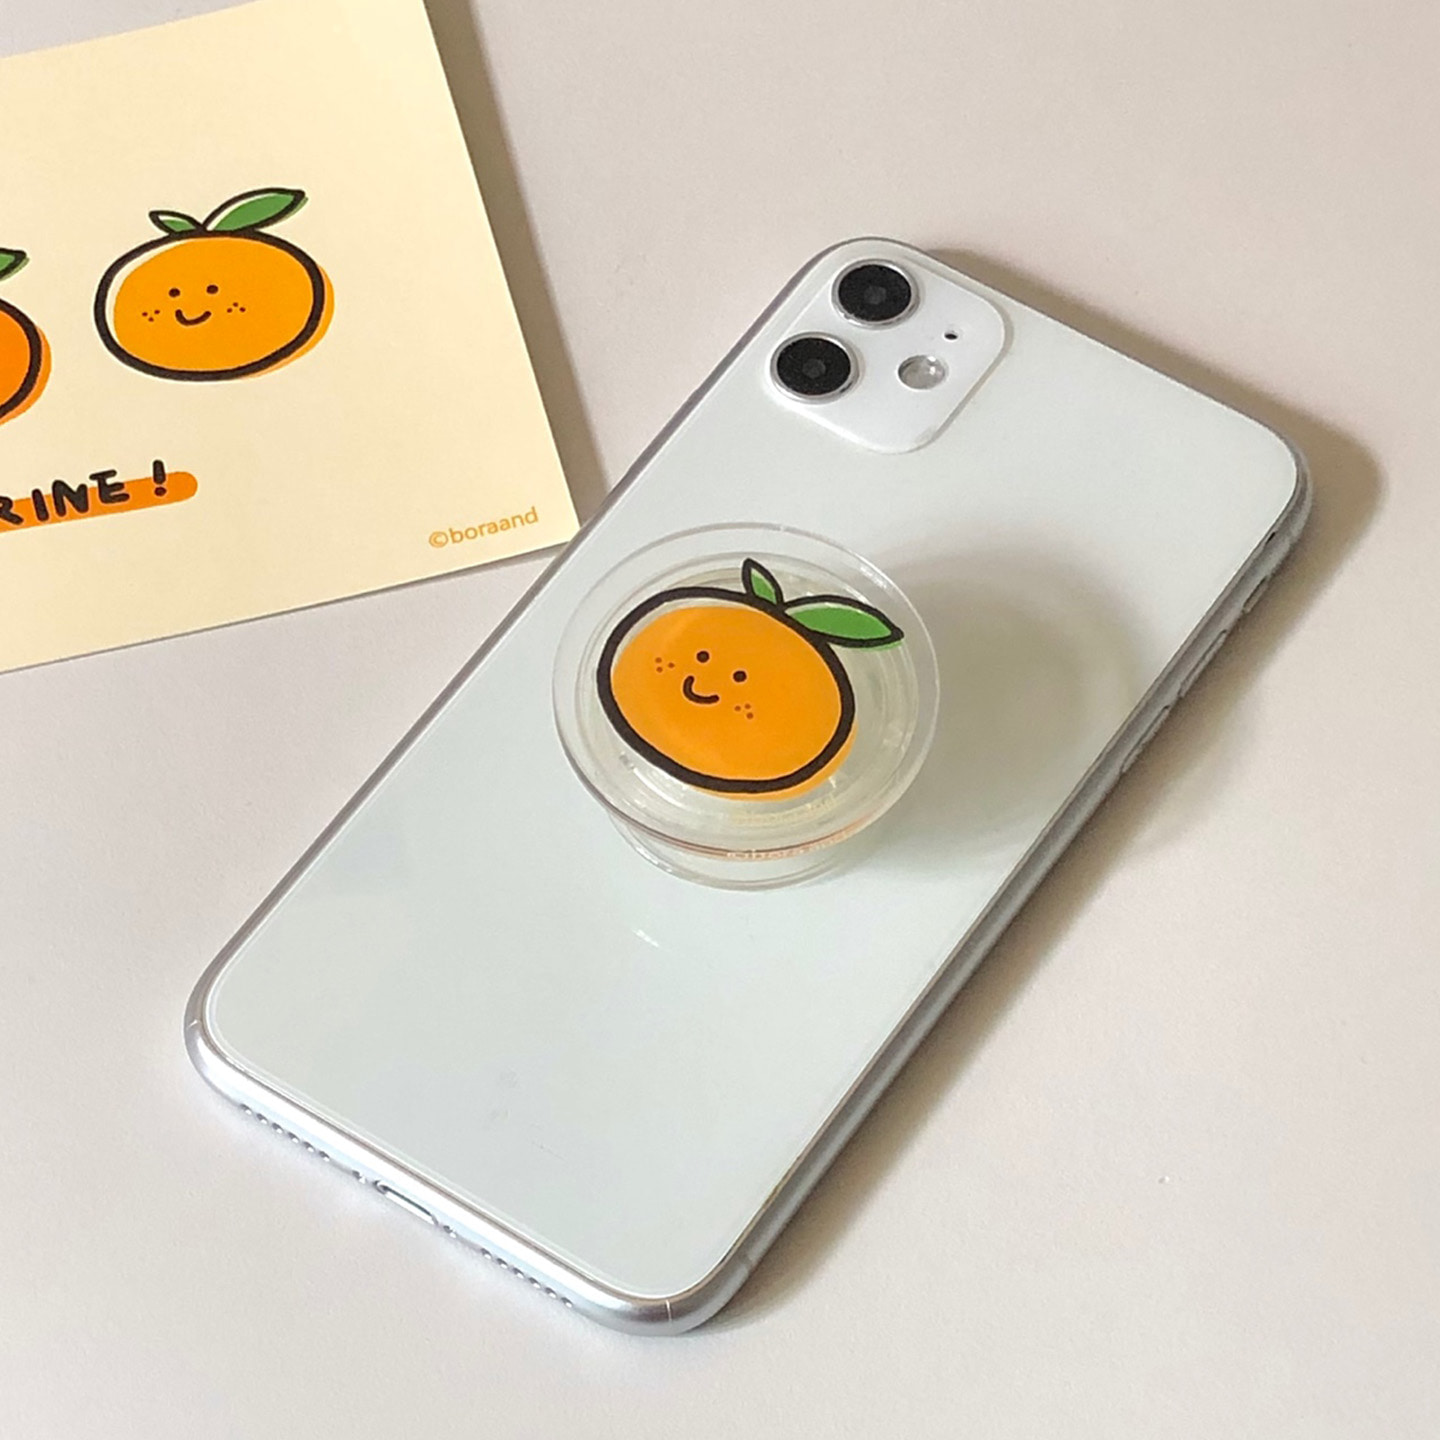 Tangerine tok (acrylic)